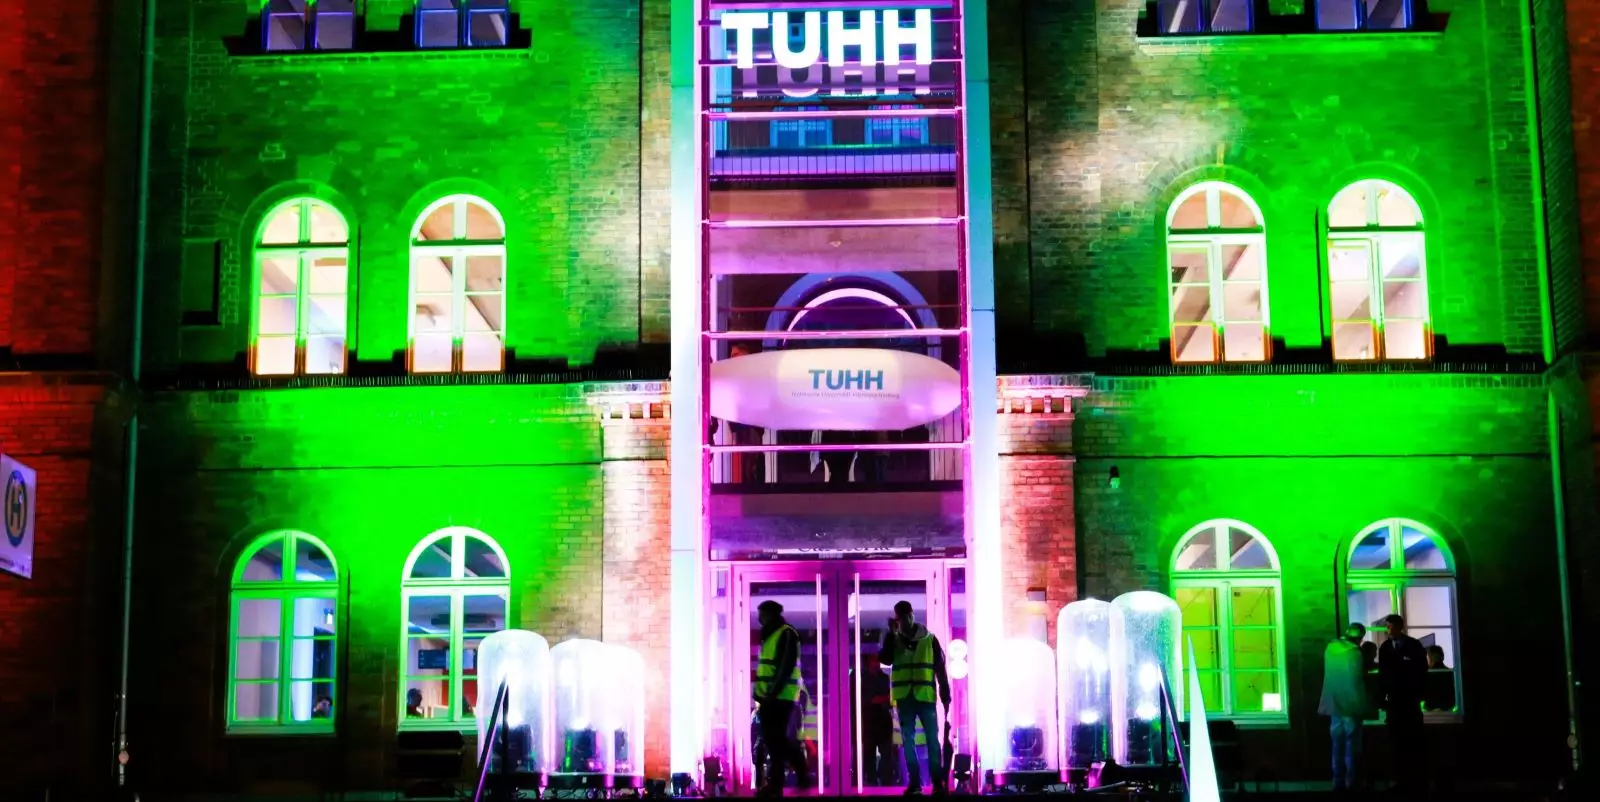 Der bunt illuminierte Haupteingang der TUHH. Foto: Christian Bittcher